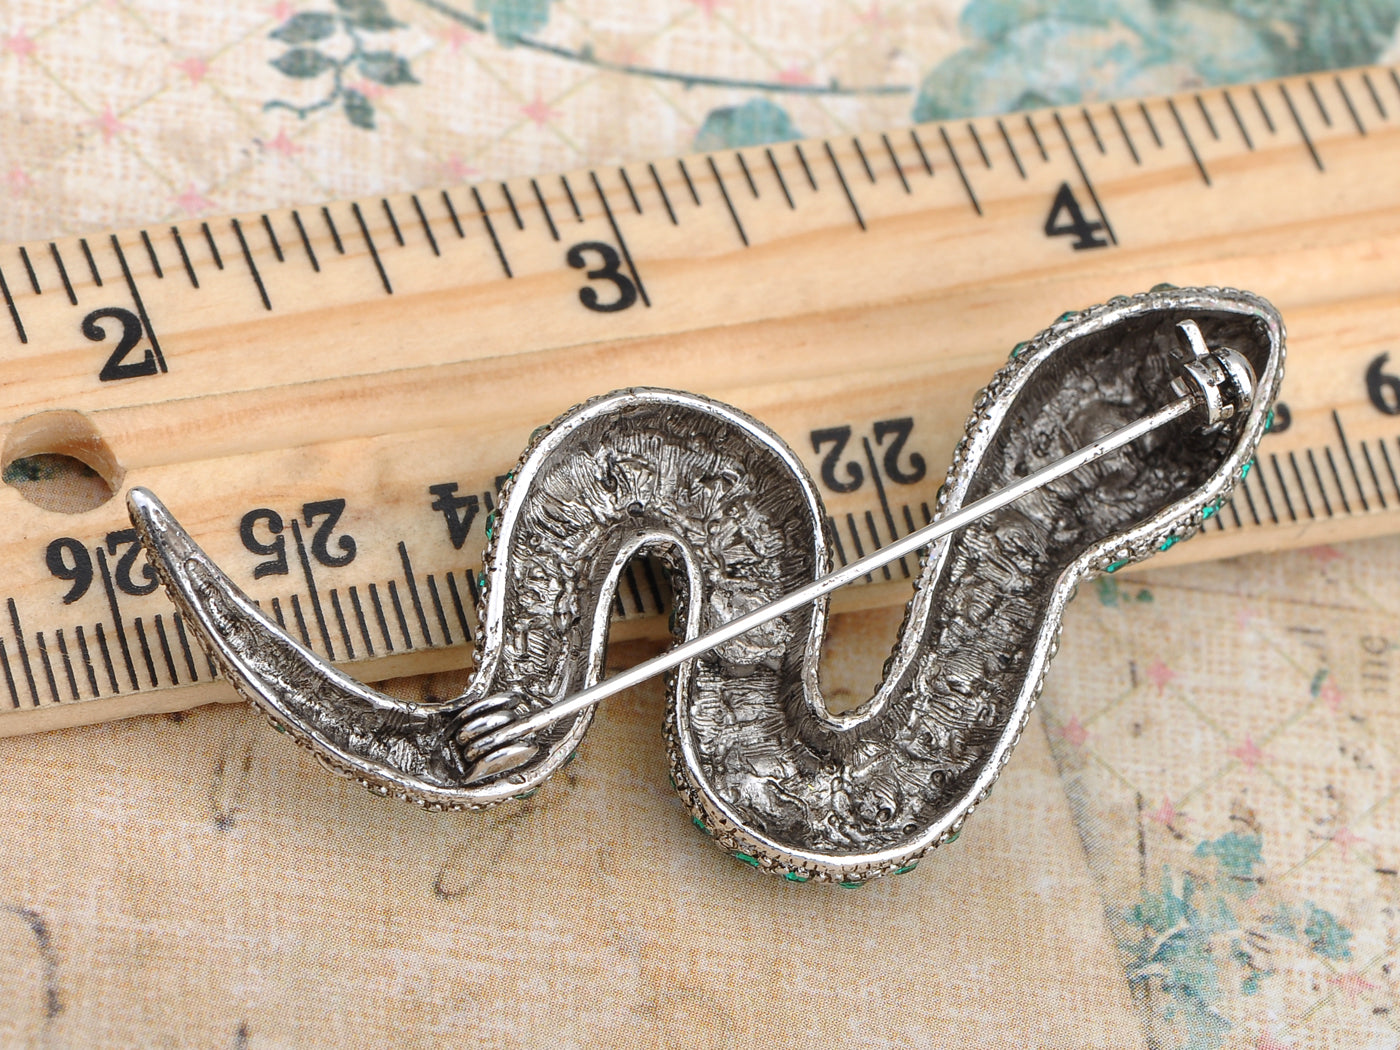 Emerald Green Python Serpent Snake Pin Brooch